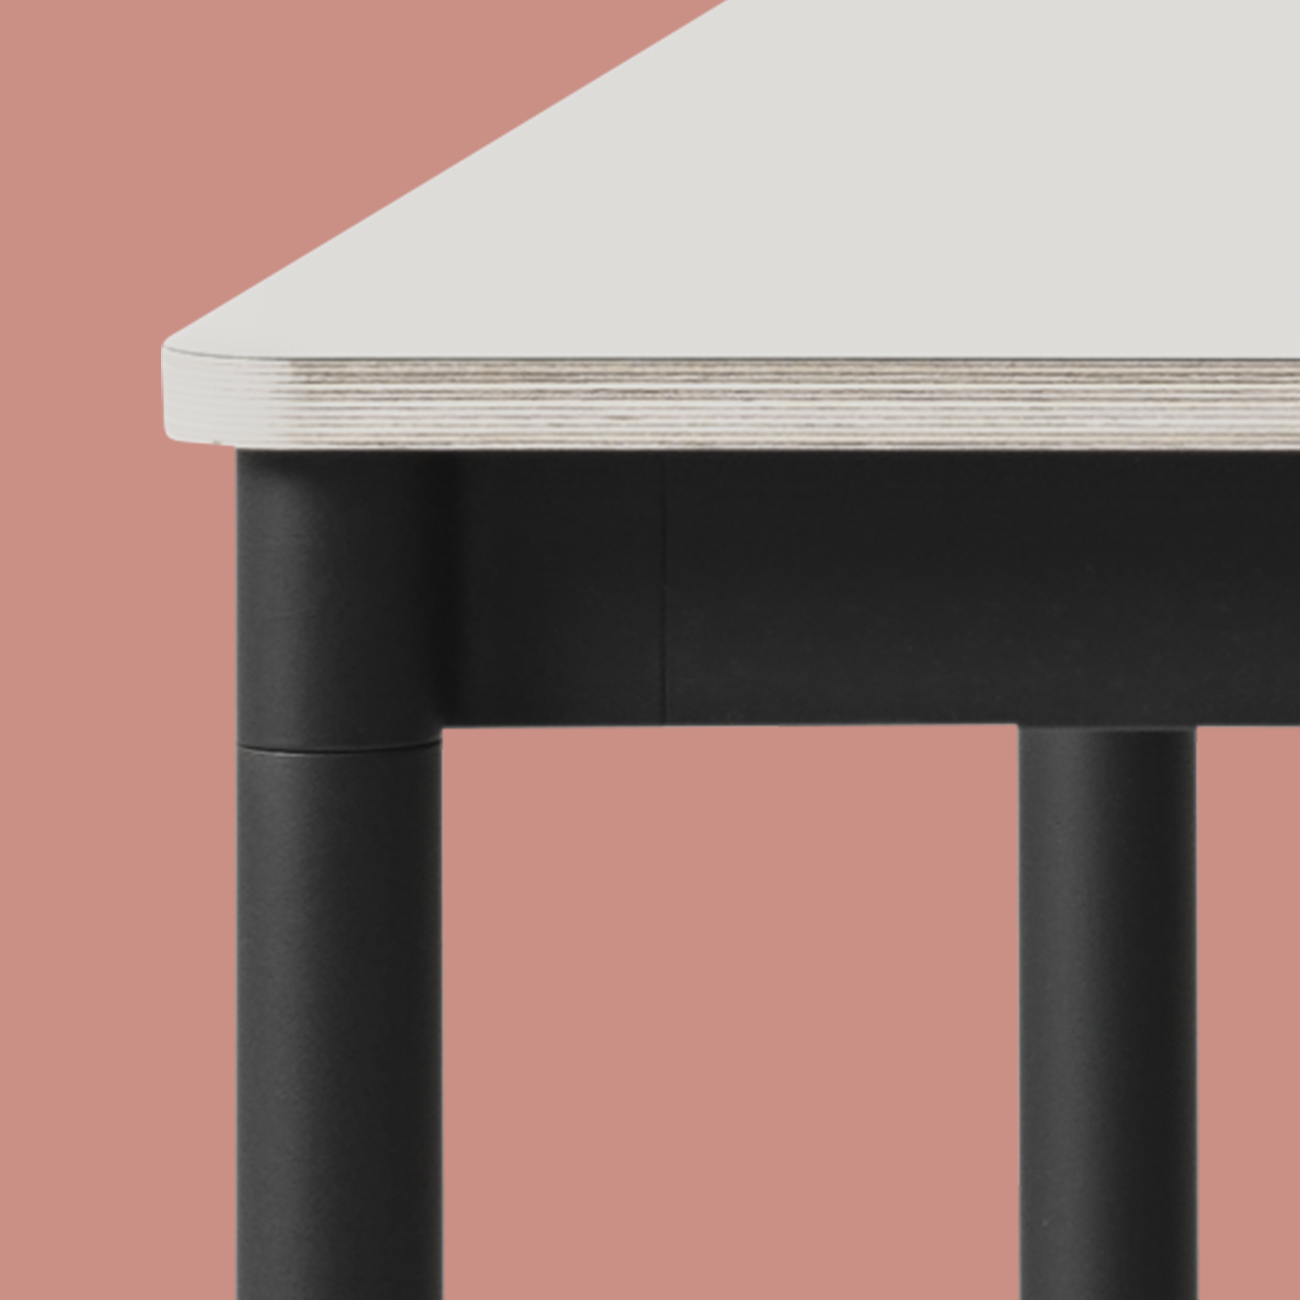 Base Tisch in Weiss / Schwarz präsentiert im Onlineshop von KAQTU Design AG. Schreibtisch ist von Muuto